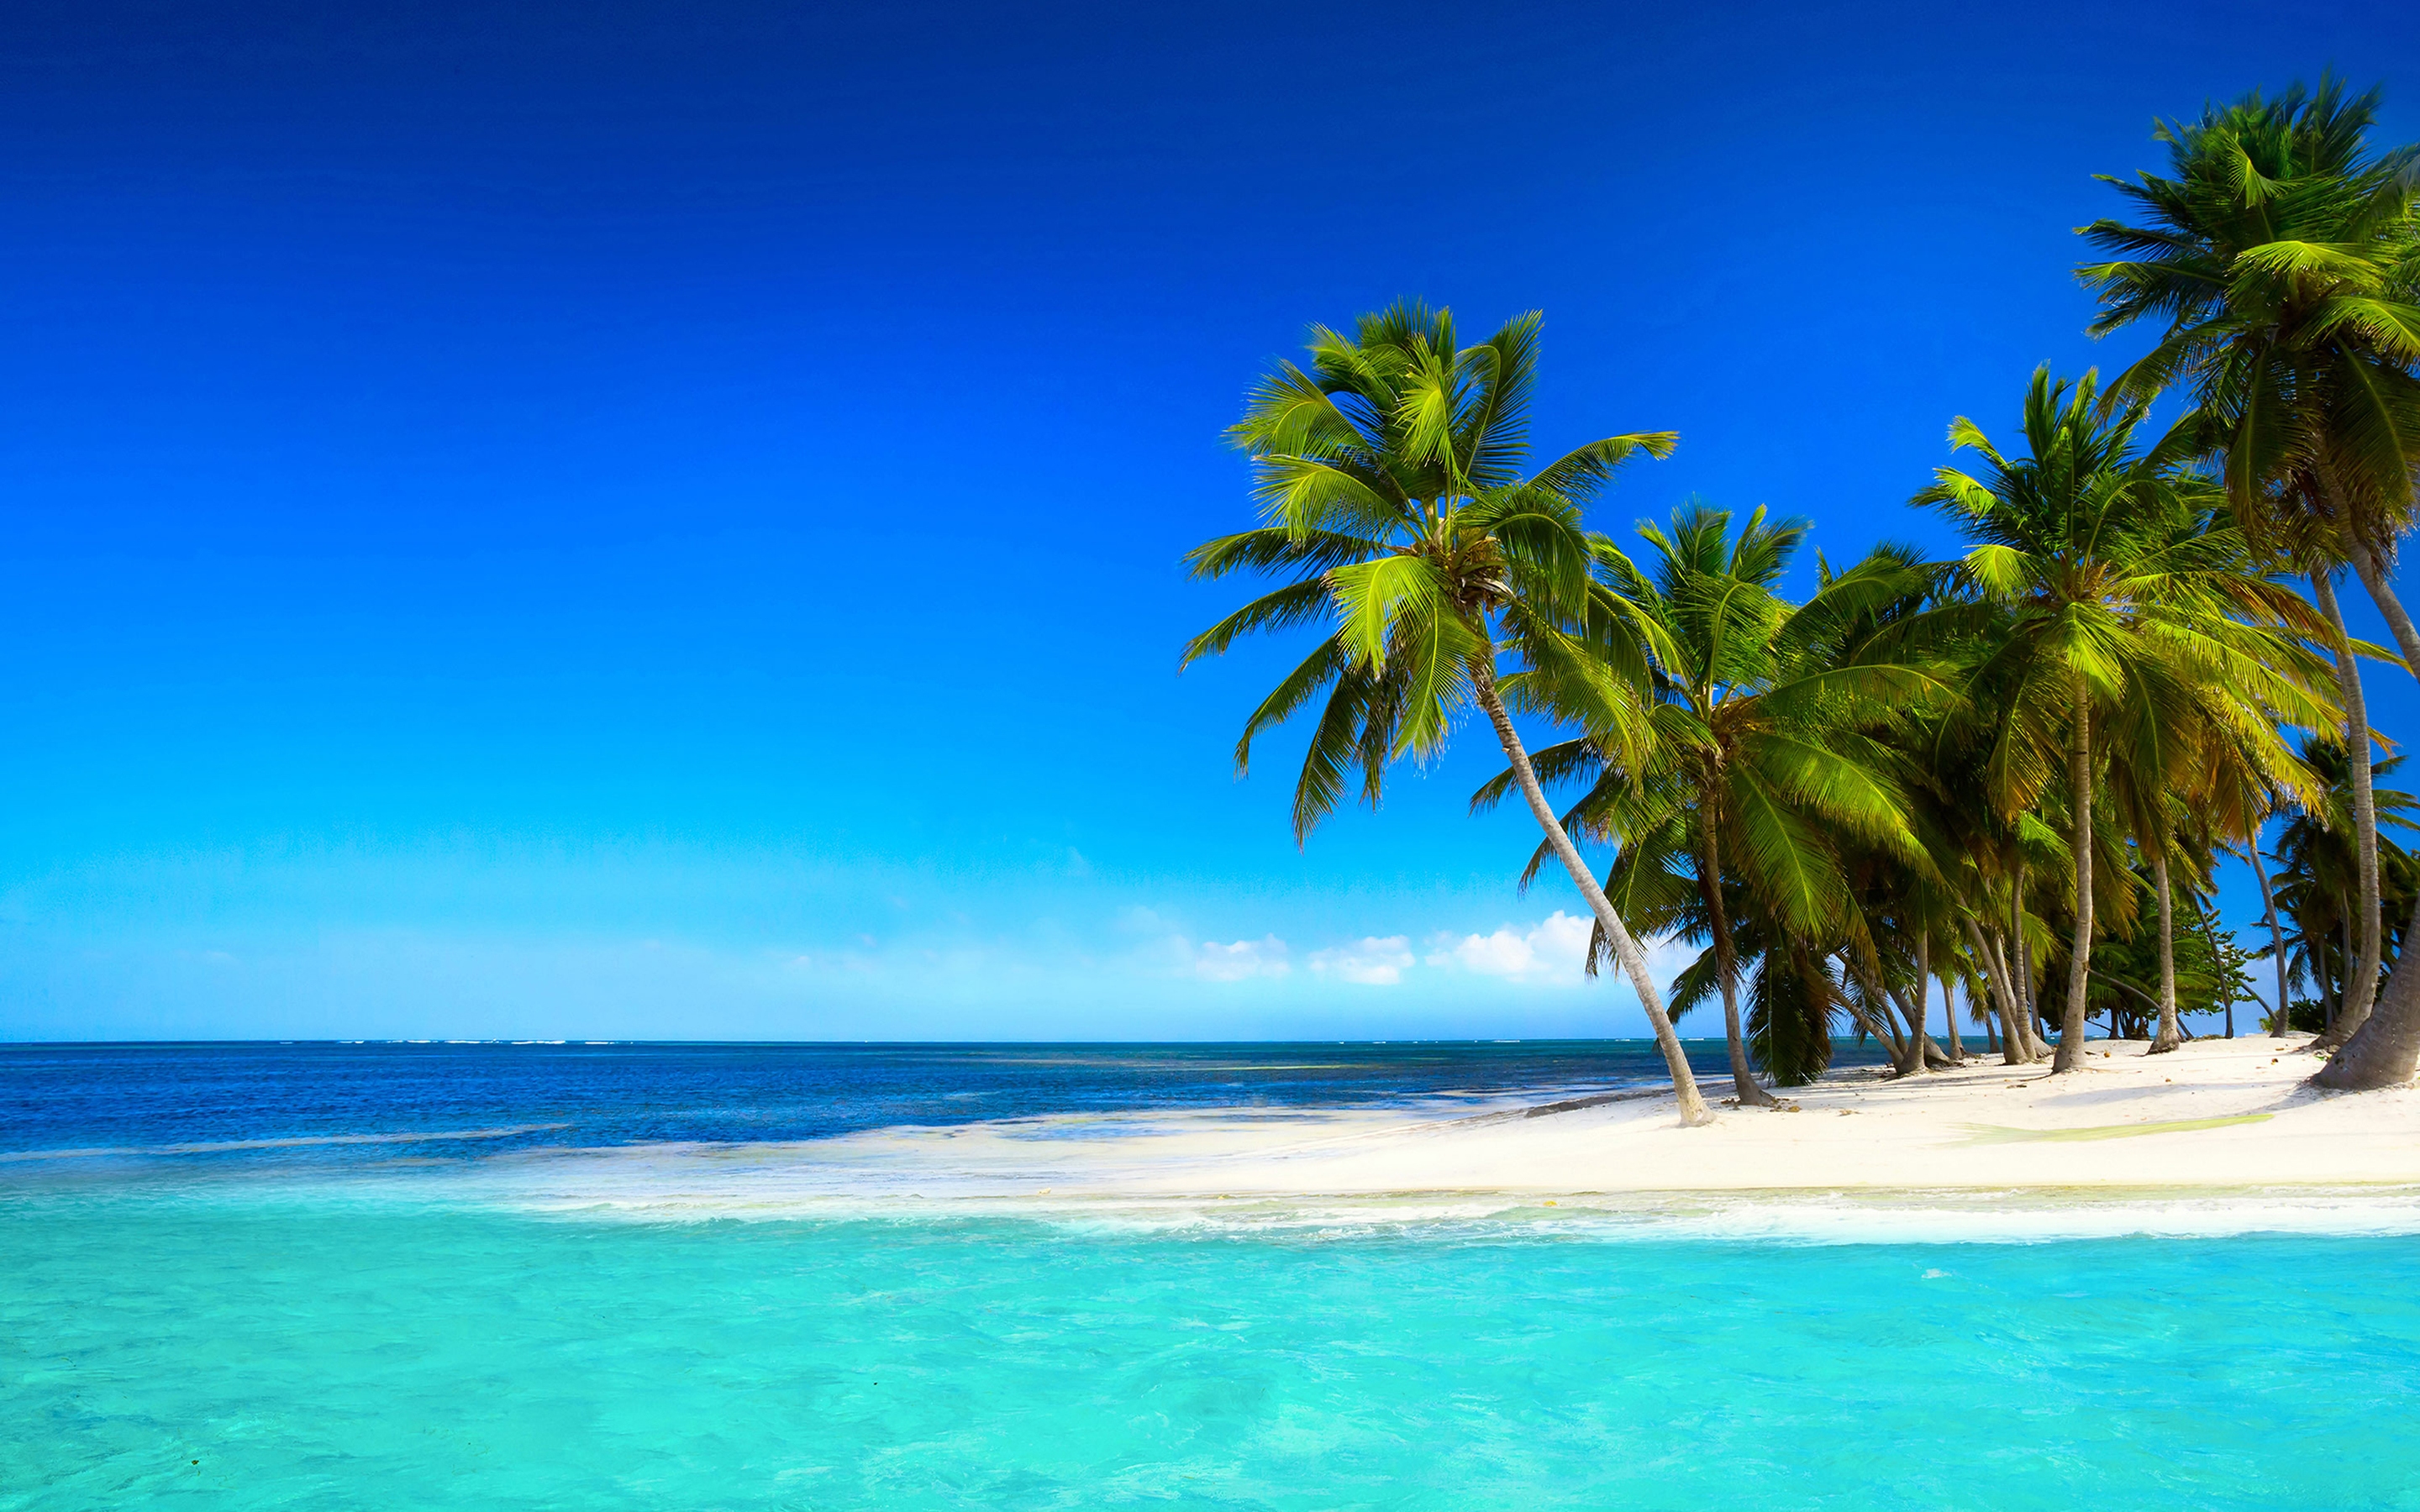 Скачать обои бесплатно Пляж, Пальмы, Океан, Тропический, Земля/природа картинка на рабочий стол ПК